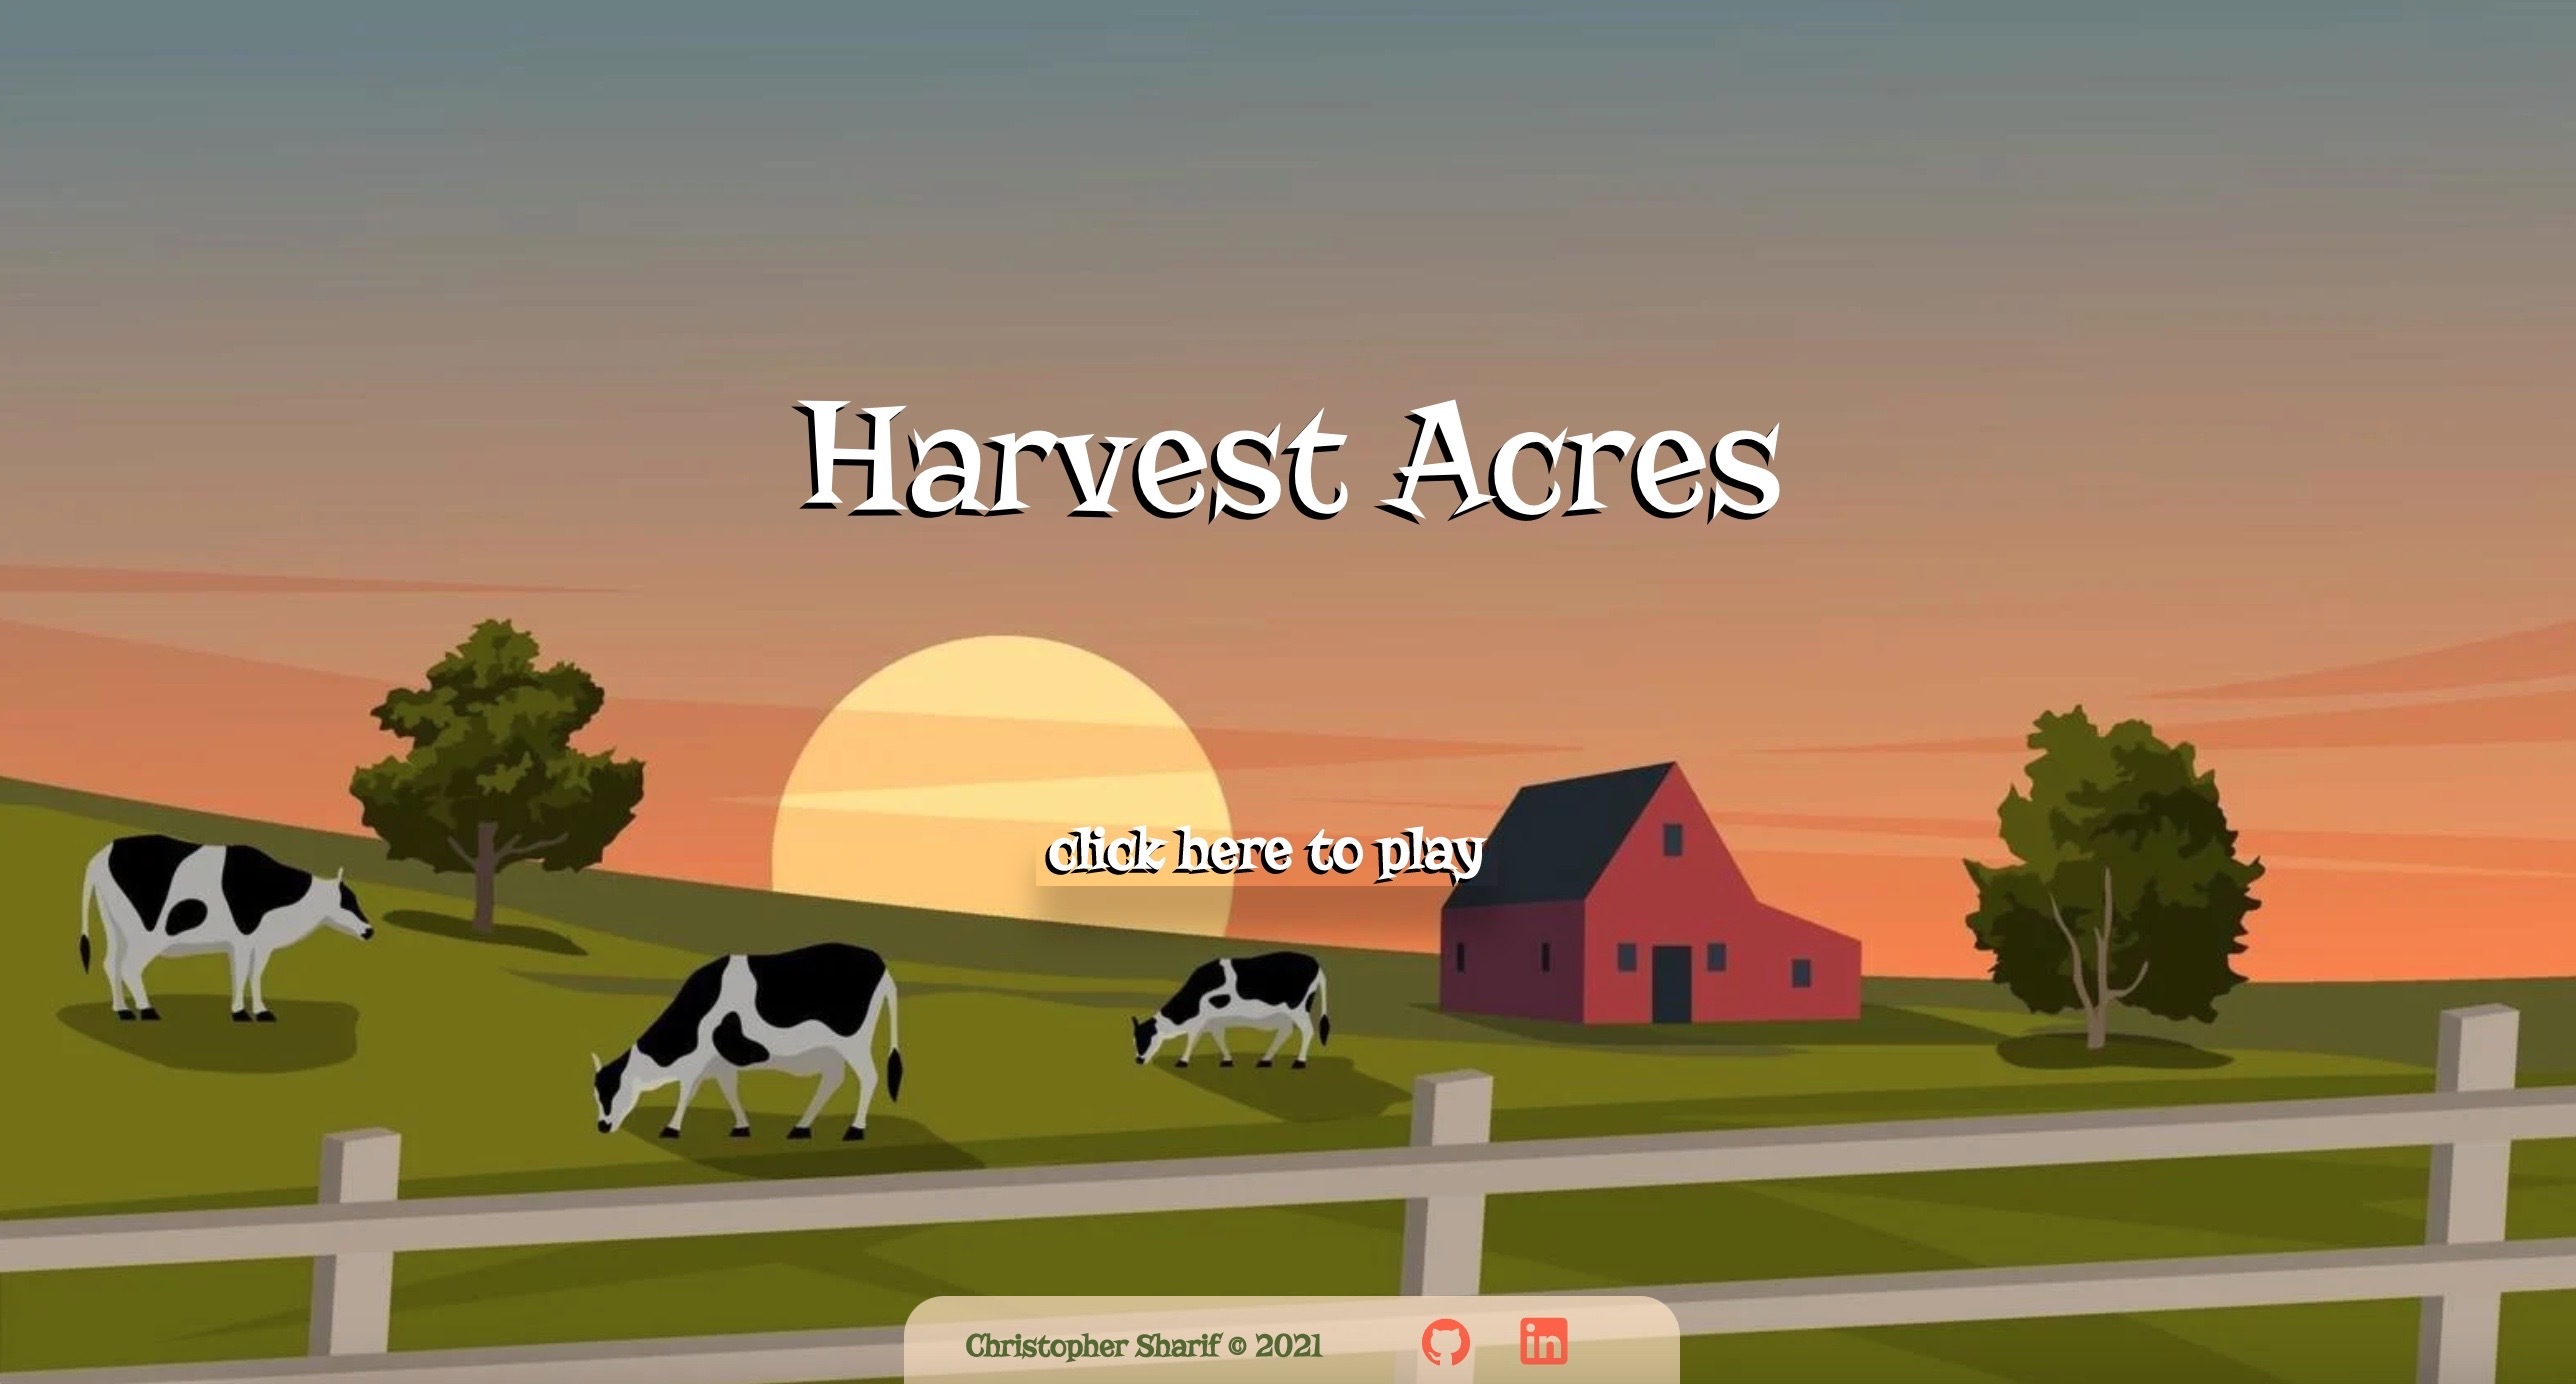 Harvest Acres